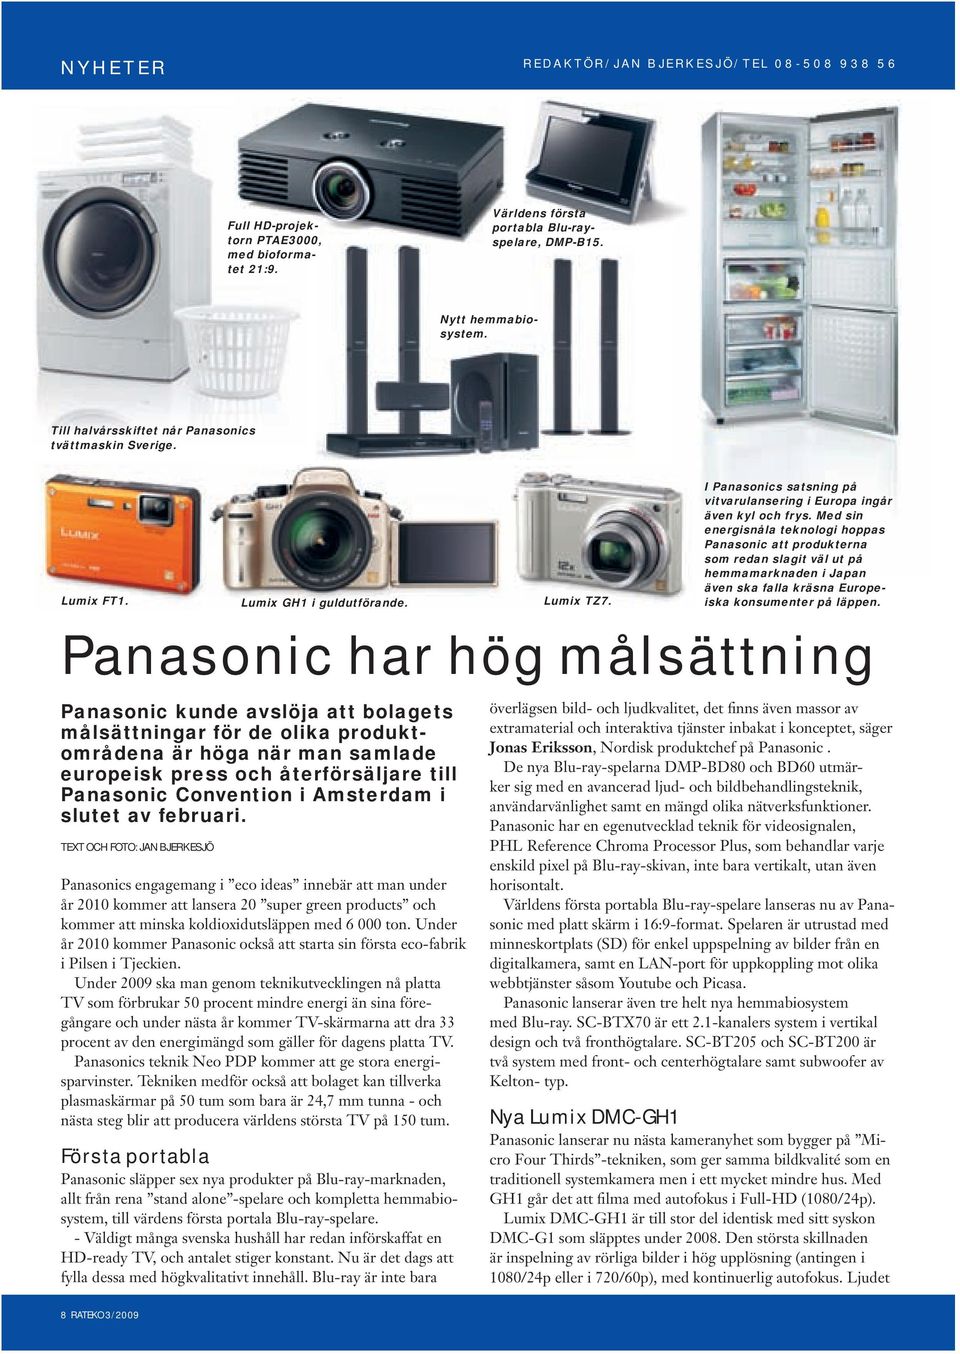 I Panasonics satsning på vitvarulansering i Europa ingår även kyl och frys.